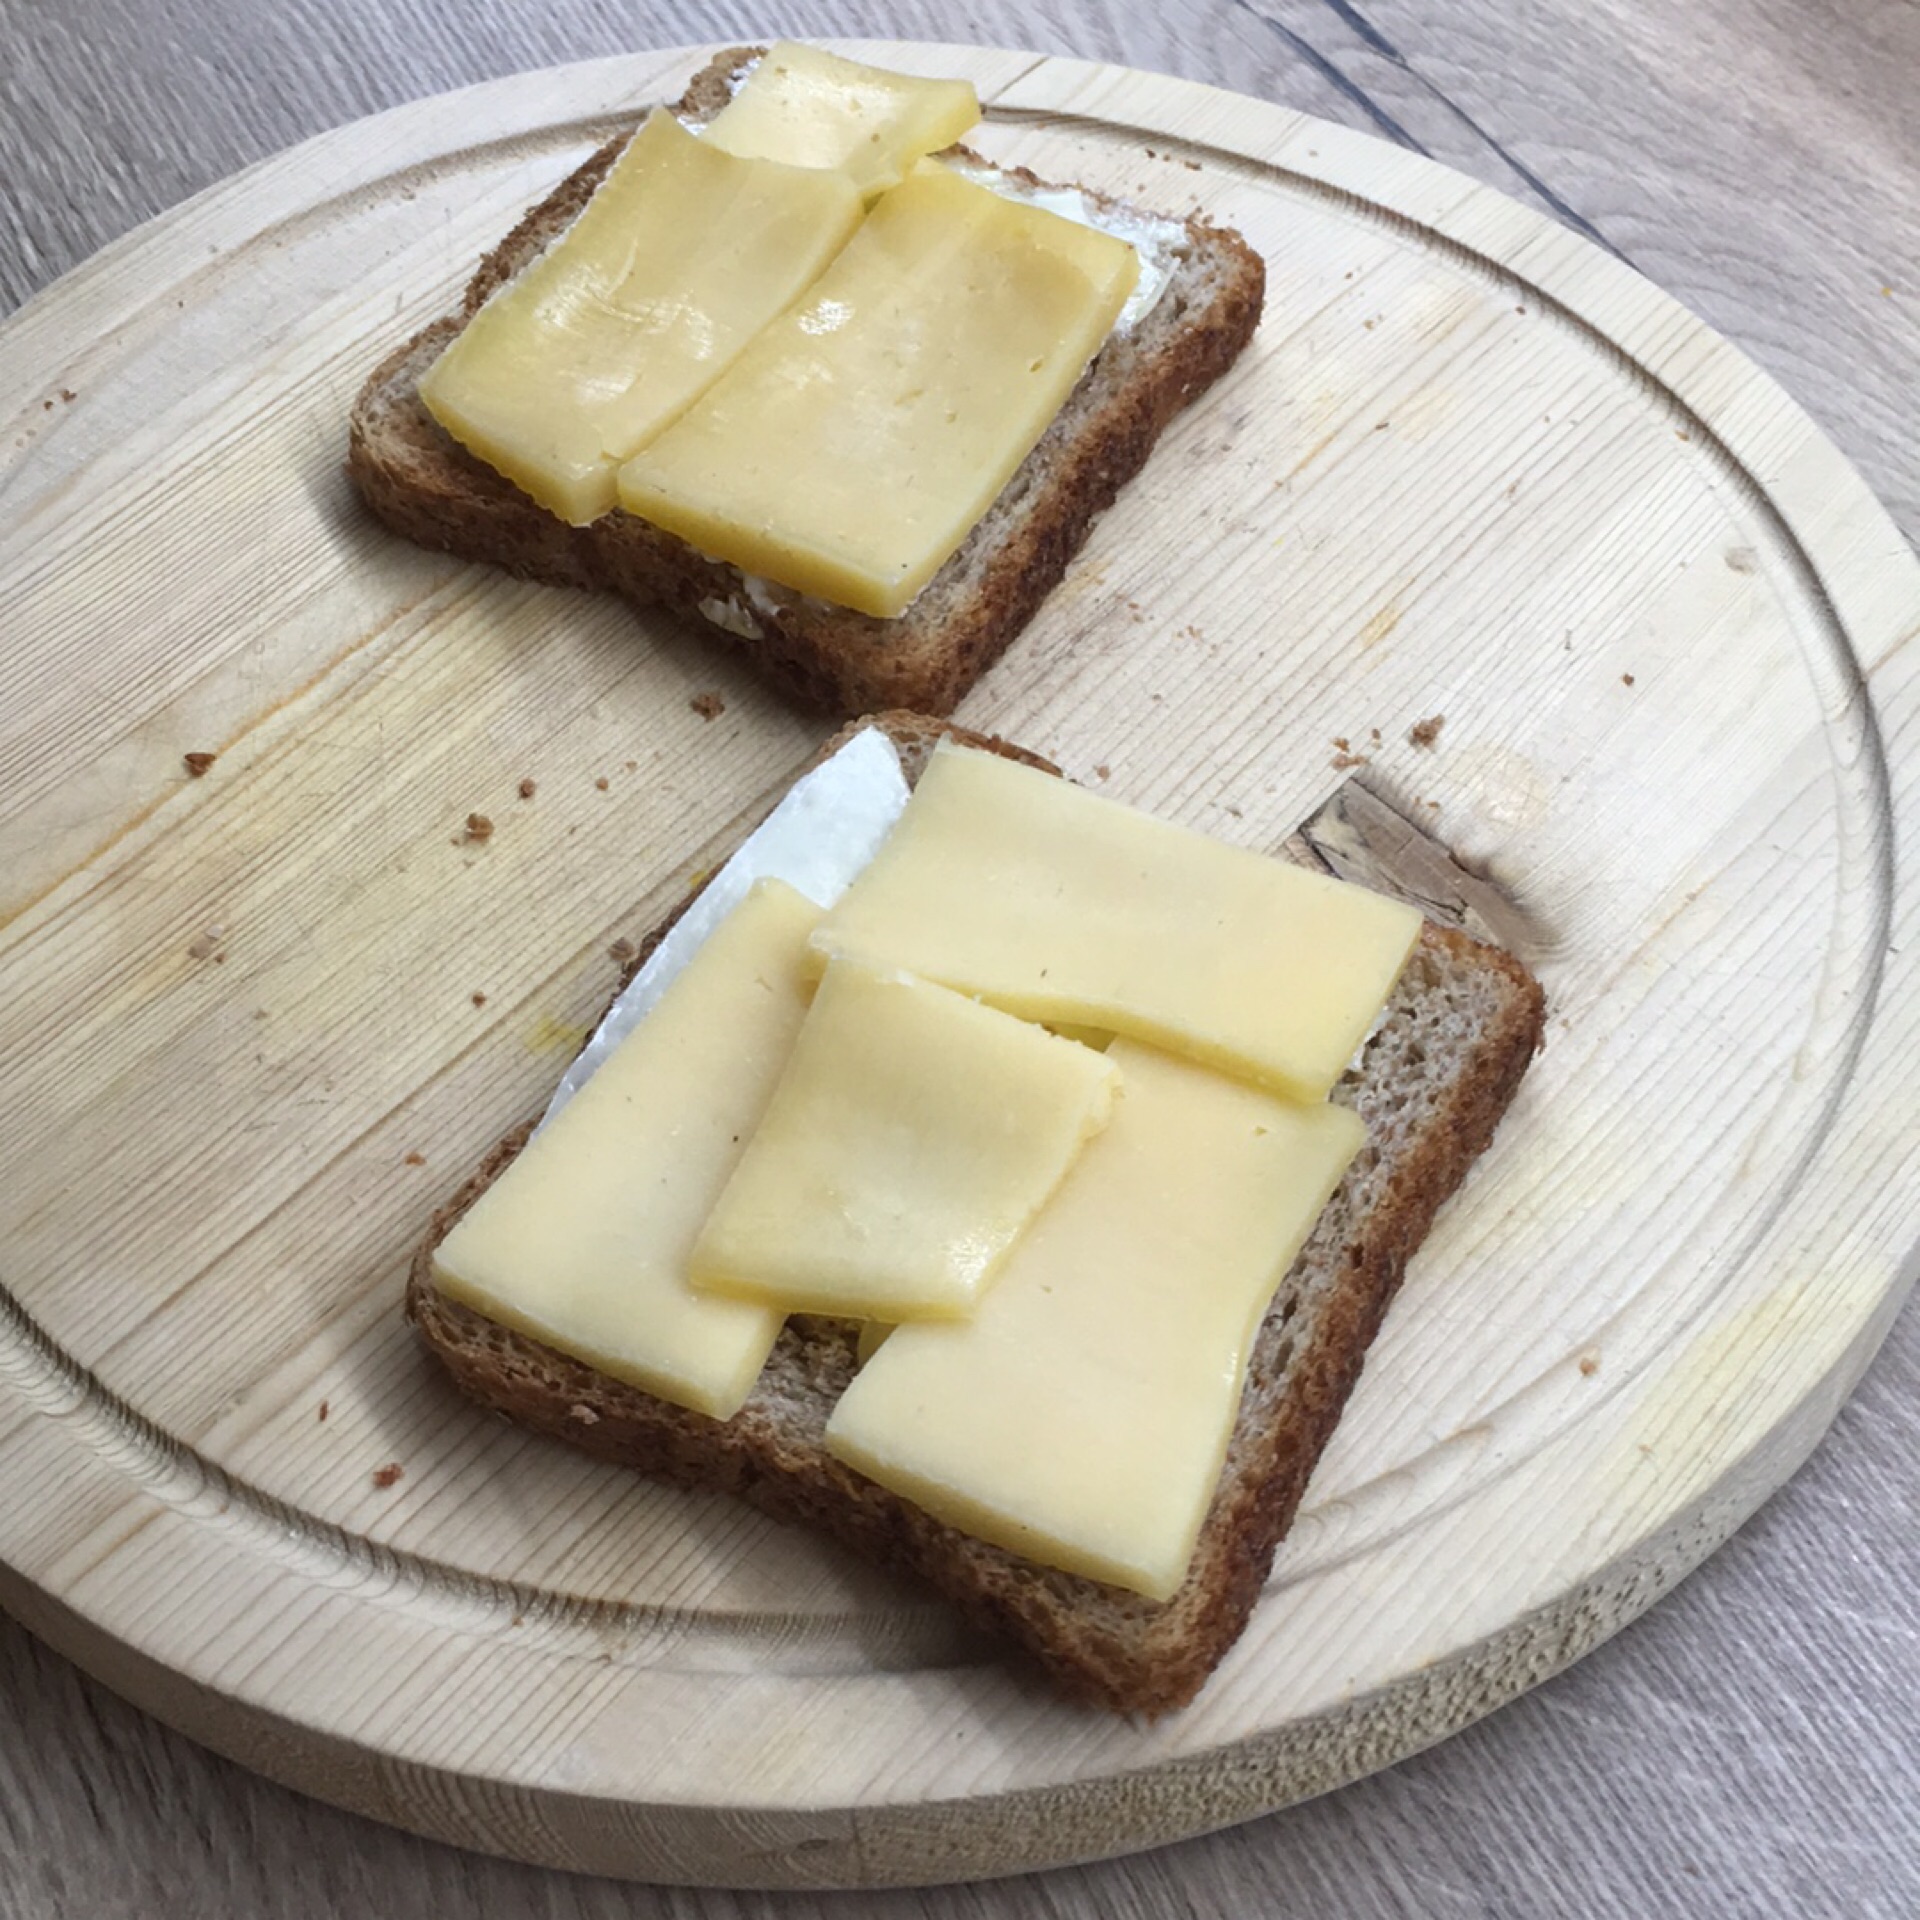 Калорийность бутерброда с черным хлебом. Бутерброд с маслом и сыром ккал.